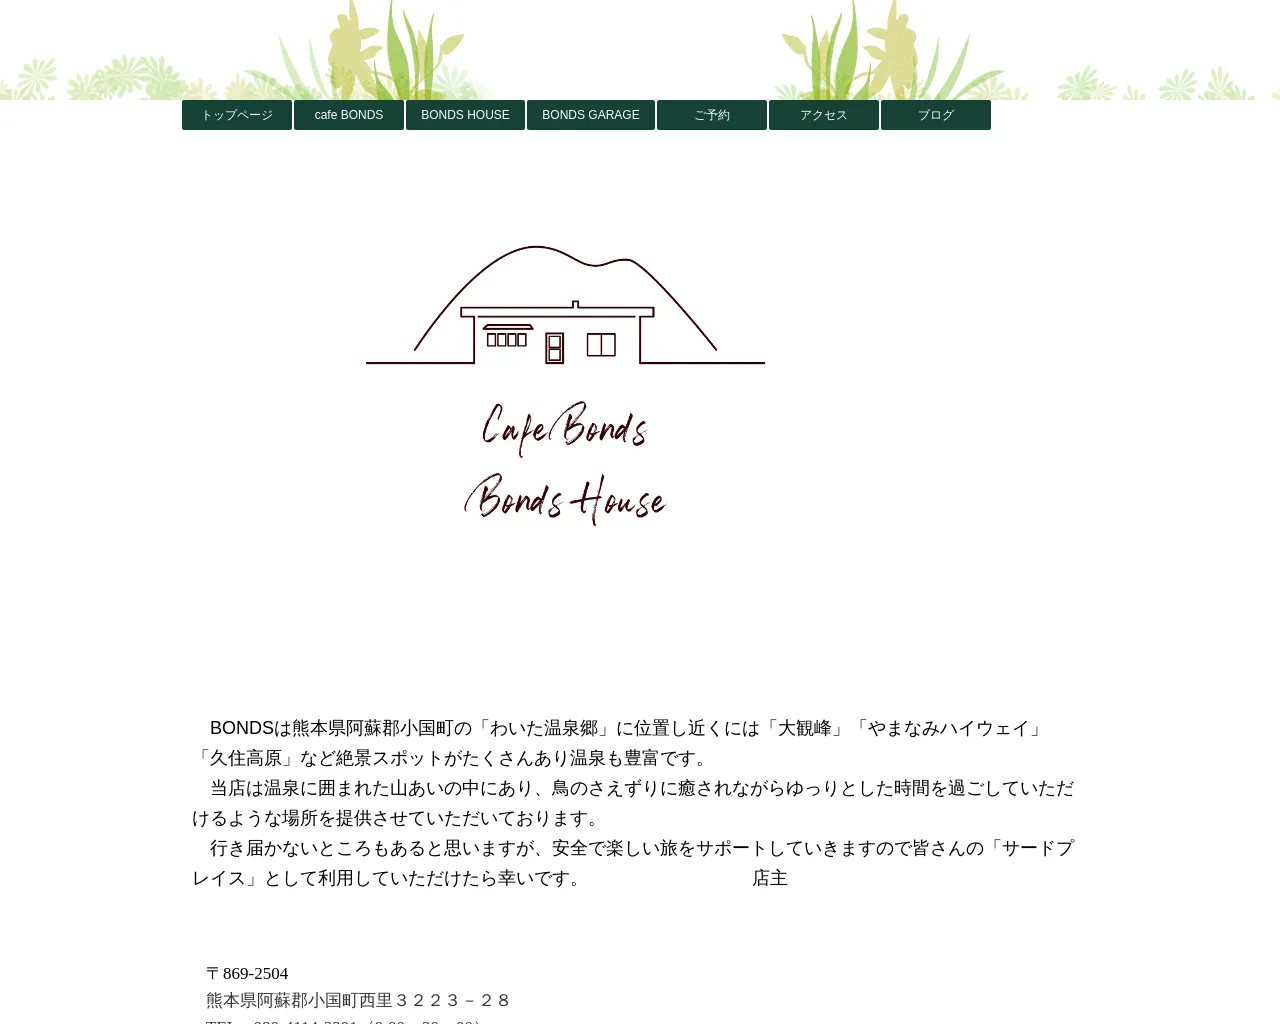 cafe BONDS ＆ BONDS HOUSE site